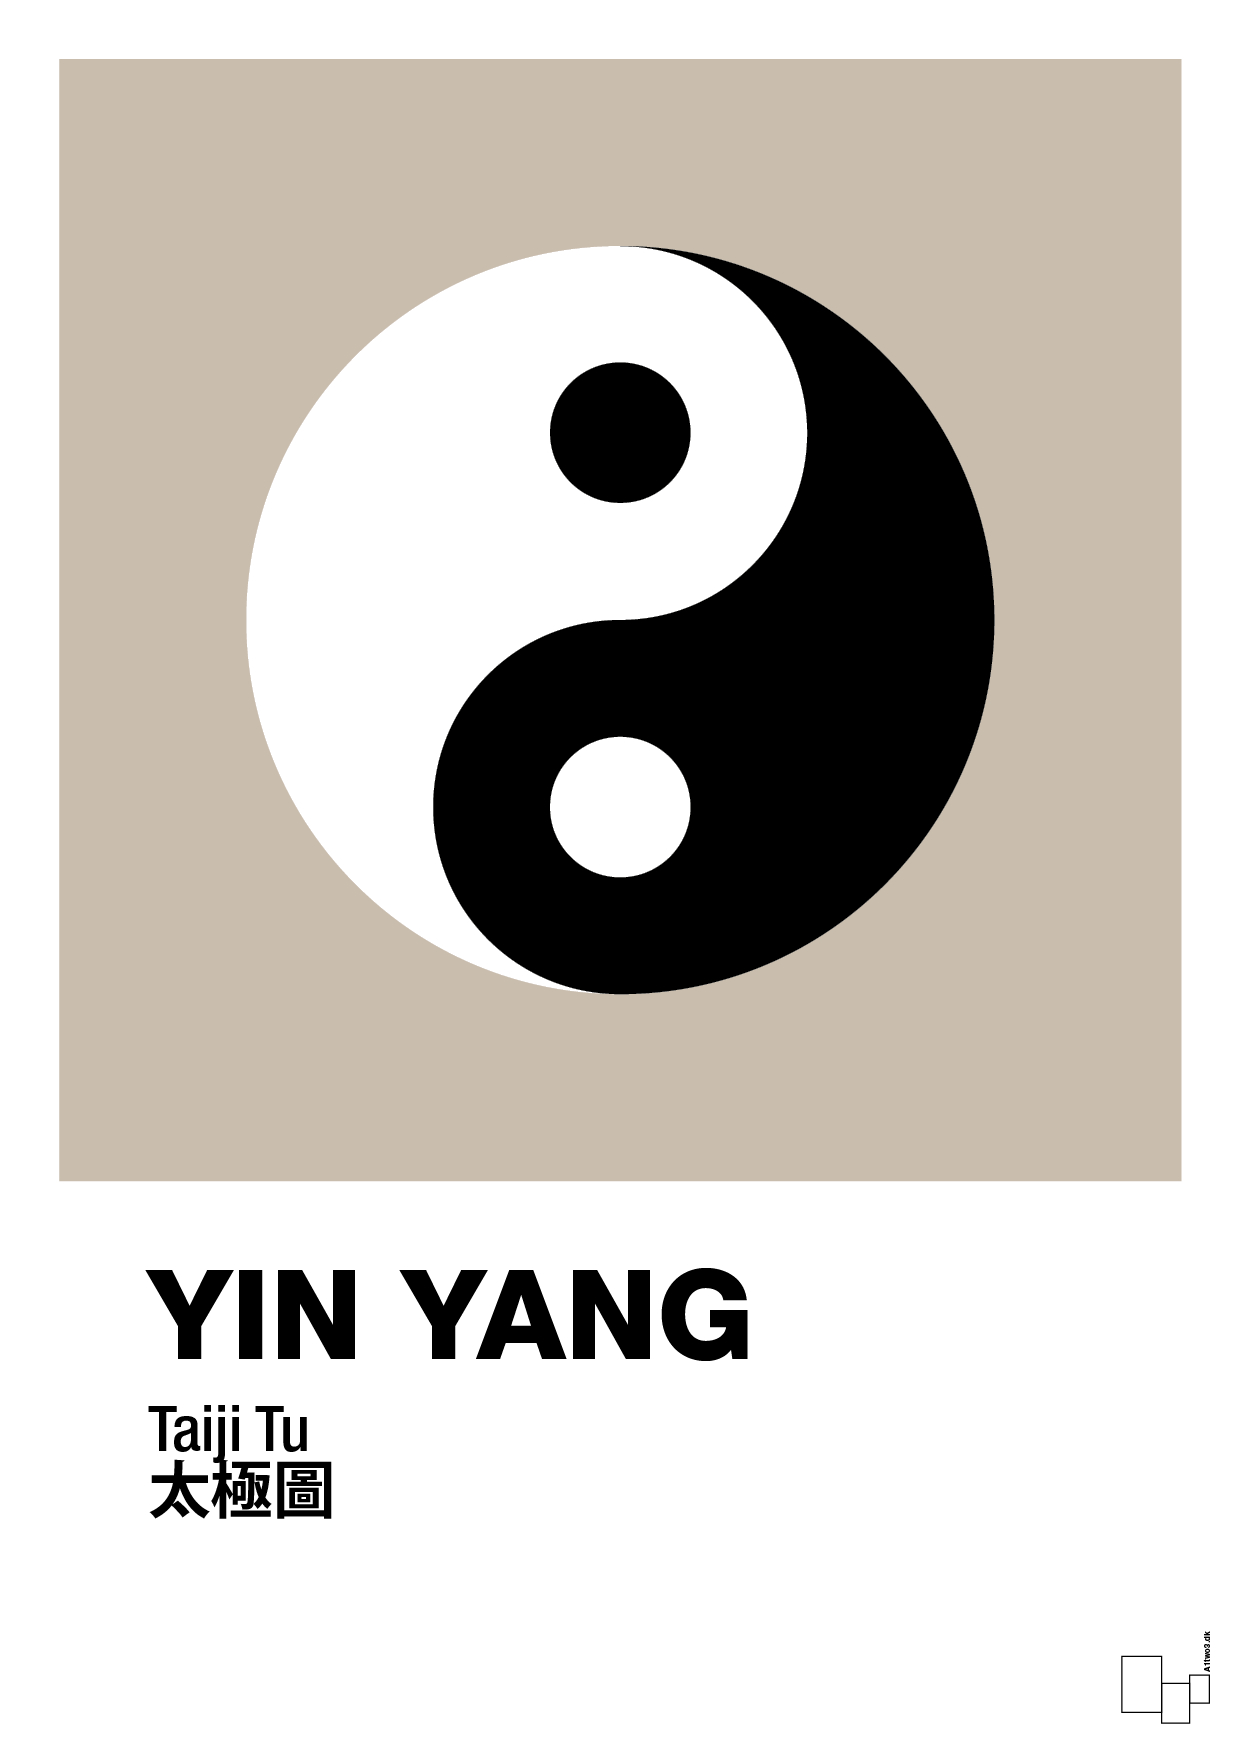 yin yang - Plakat med Videnskab i Creamy Mushroom